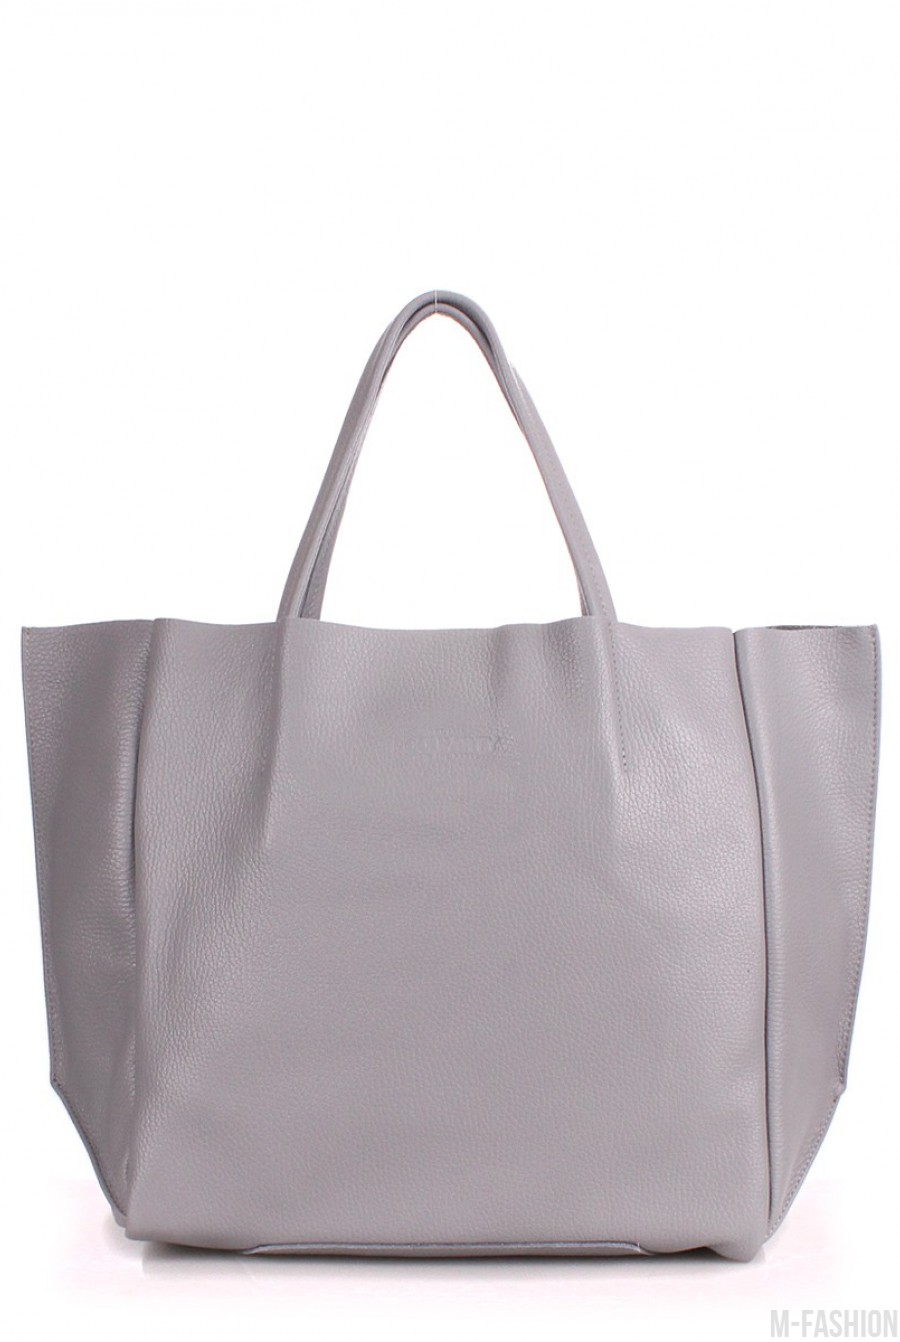 Кожаная серая сумка Soho классического дизайна - Фото 1